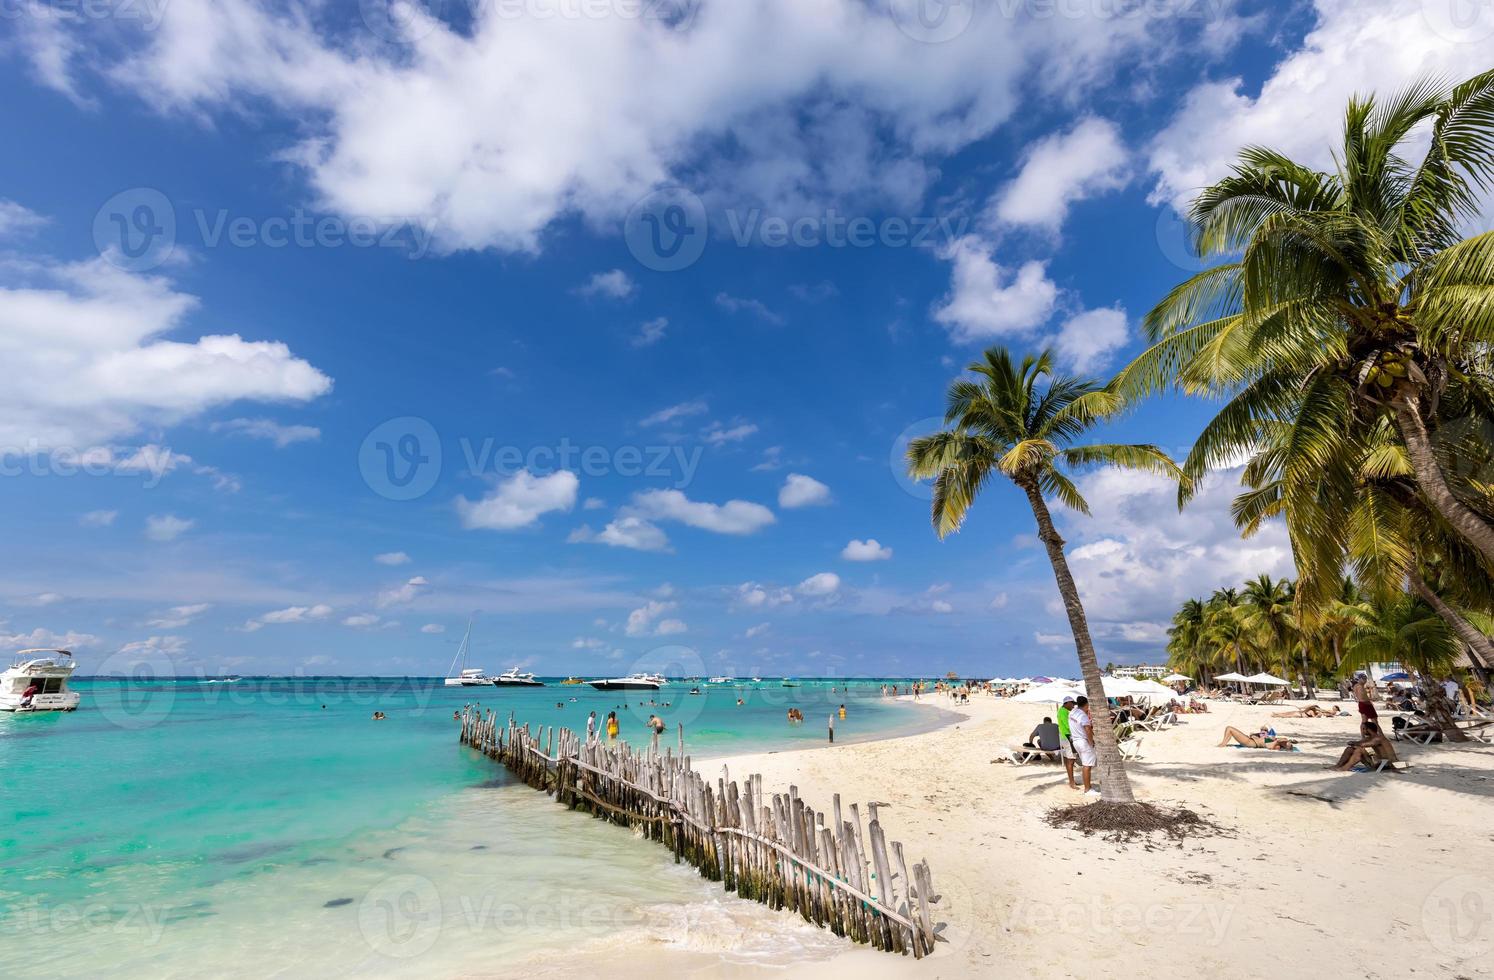 Der ruhige, türkisfarbene Strand von Isla Mujeres, Playa Norte, ist berühmt für sein smaragdgrünes Wasser, seine sandige Küste und Strandbars für Spaß und Strandpartys foto